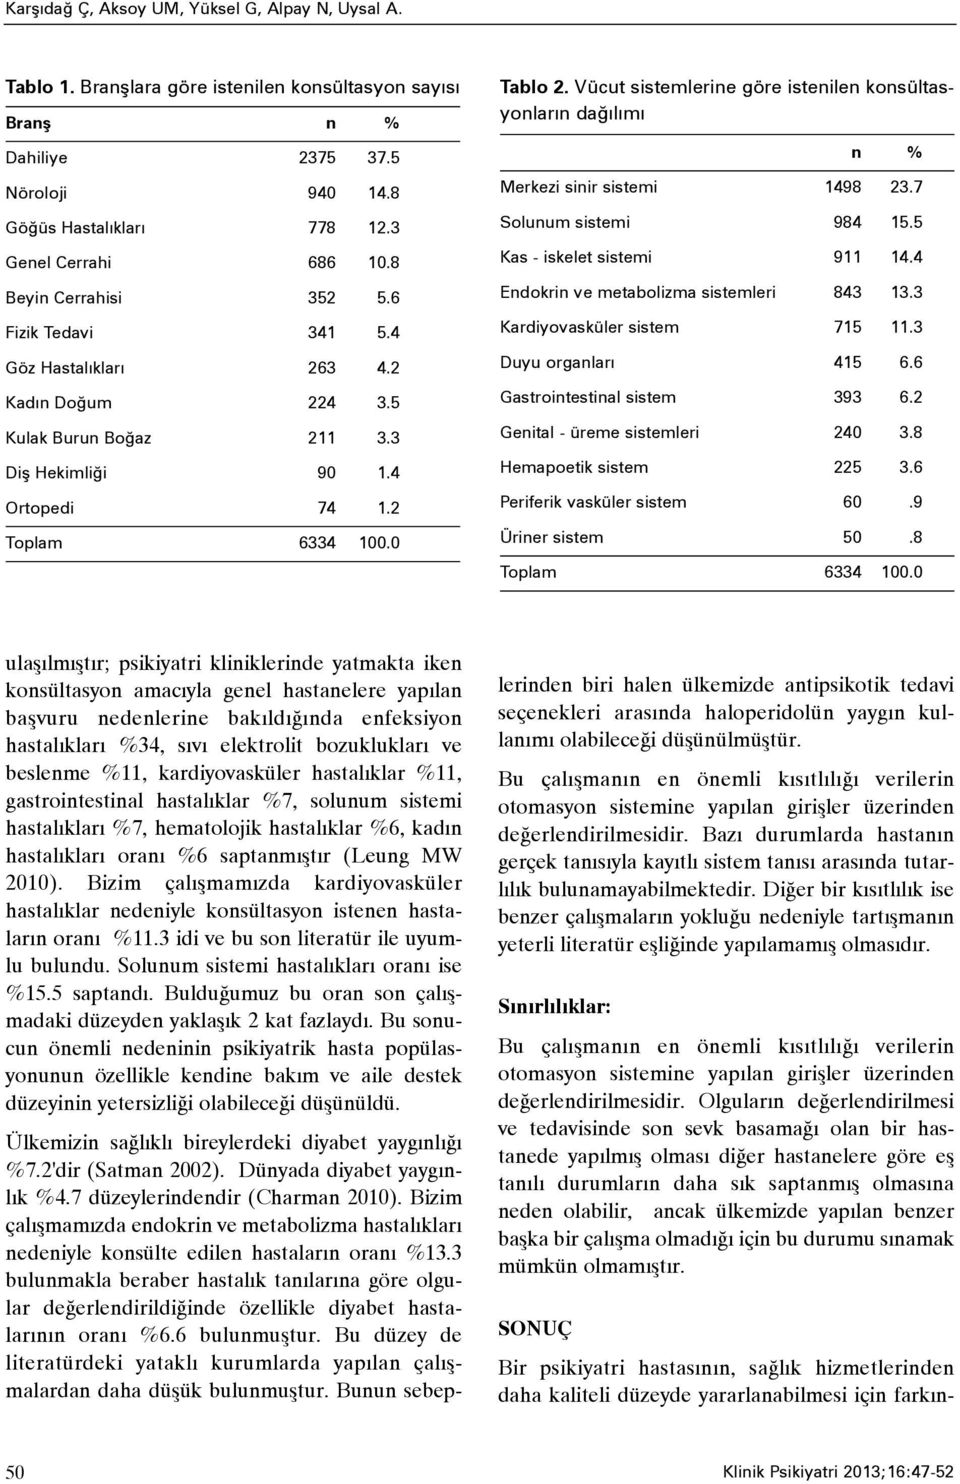 Vücut sistemlerine göre istenilen konsültasyonlarýn daðýlýmý n % Merkezi sinir sistemi 1498 23.7 Solunum sistemi 984 15.5 Kas - iskelet sistemi 911 14.4 Endokrin ve metabolizma sistemleri 843 13.